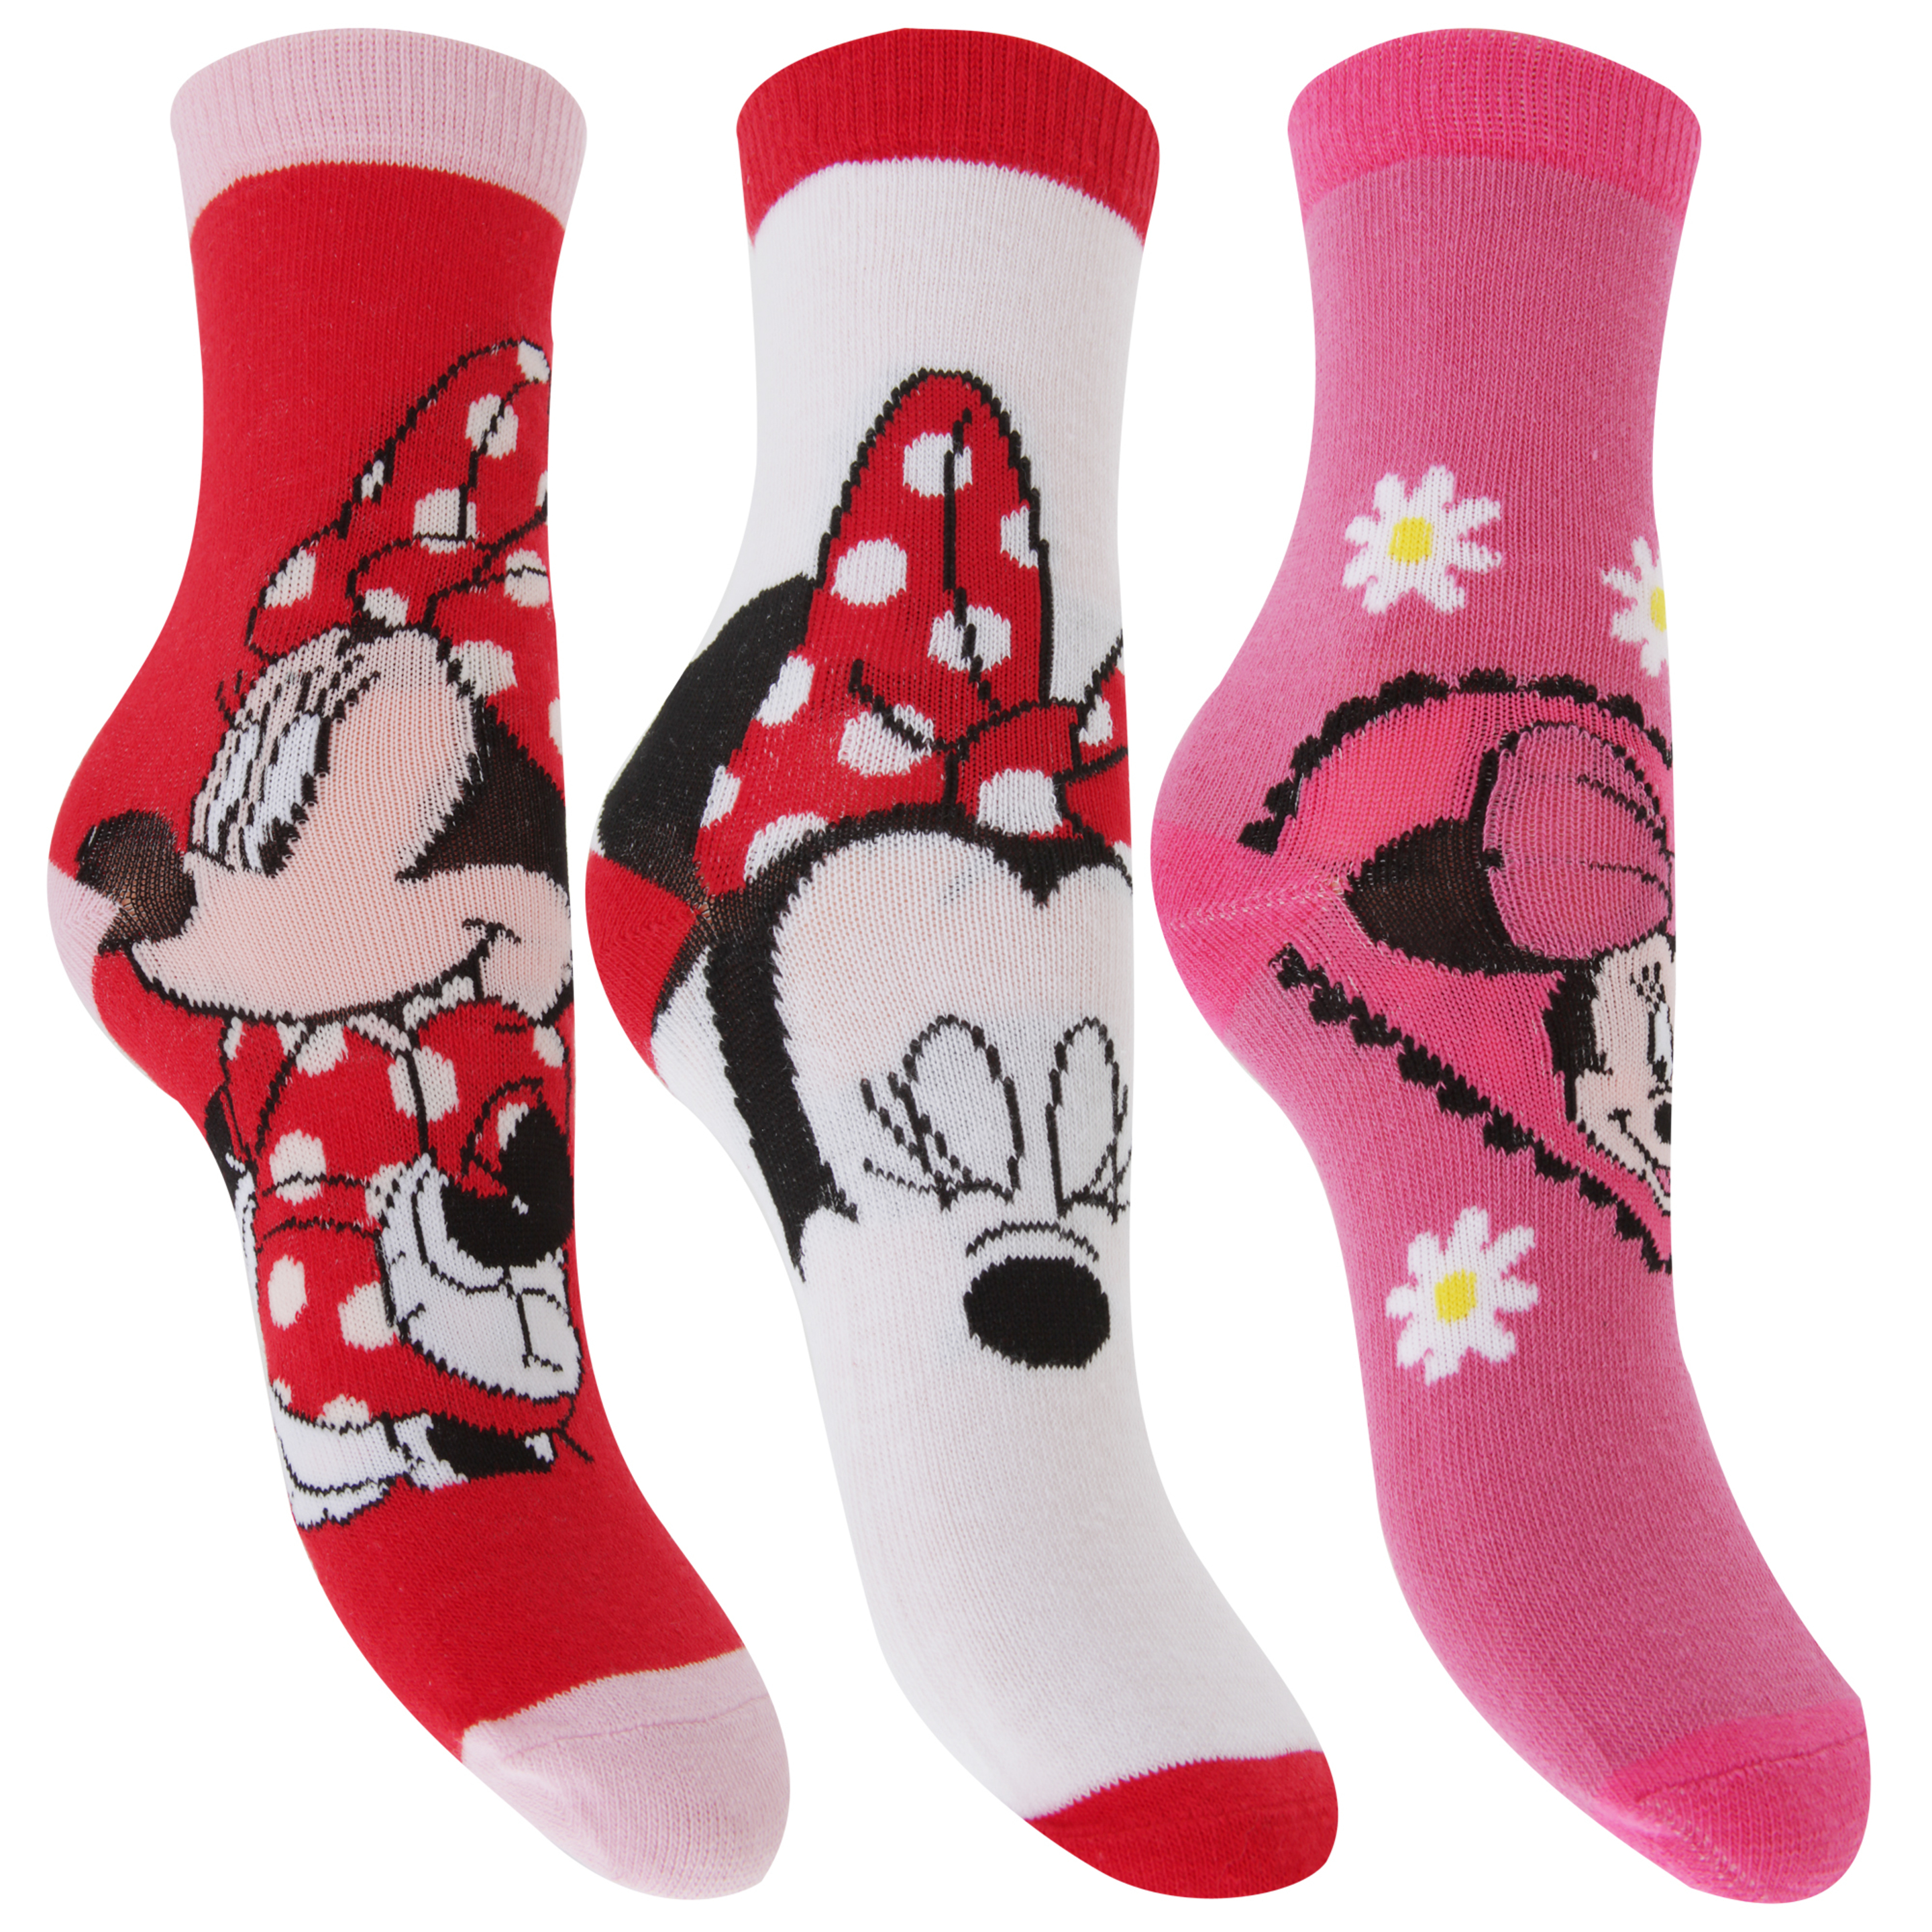 Disney Minnie Mouse - Calcetines Oficiales Estampados Para Niñas (3 Pares) (Rojo/blanco/rosa)